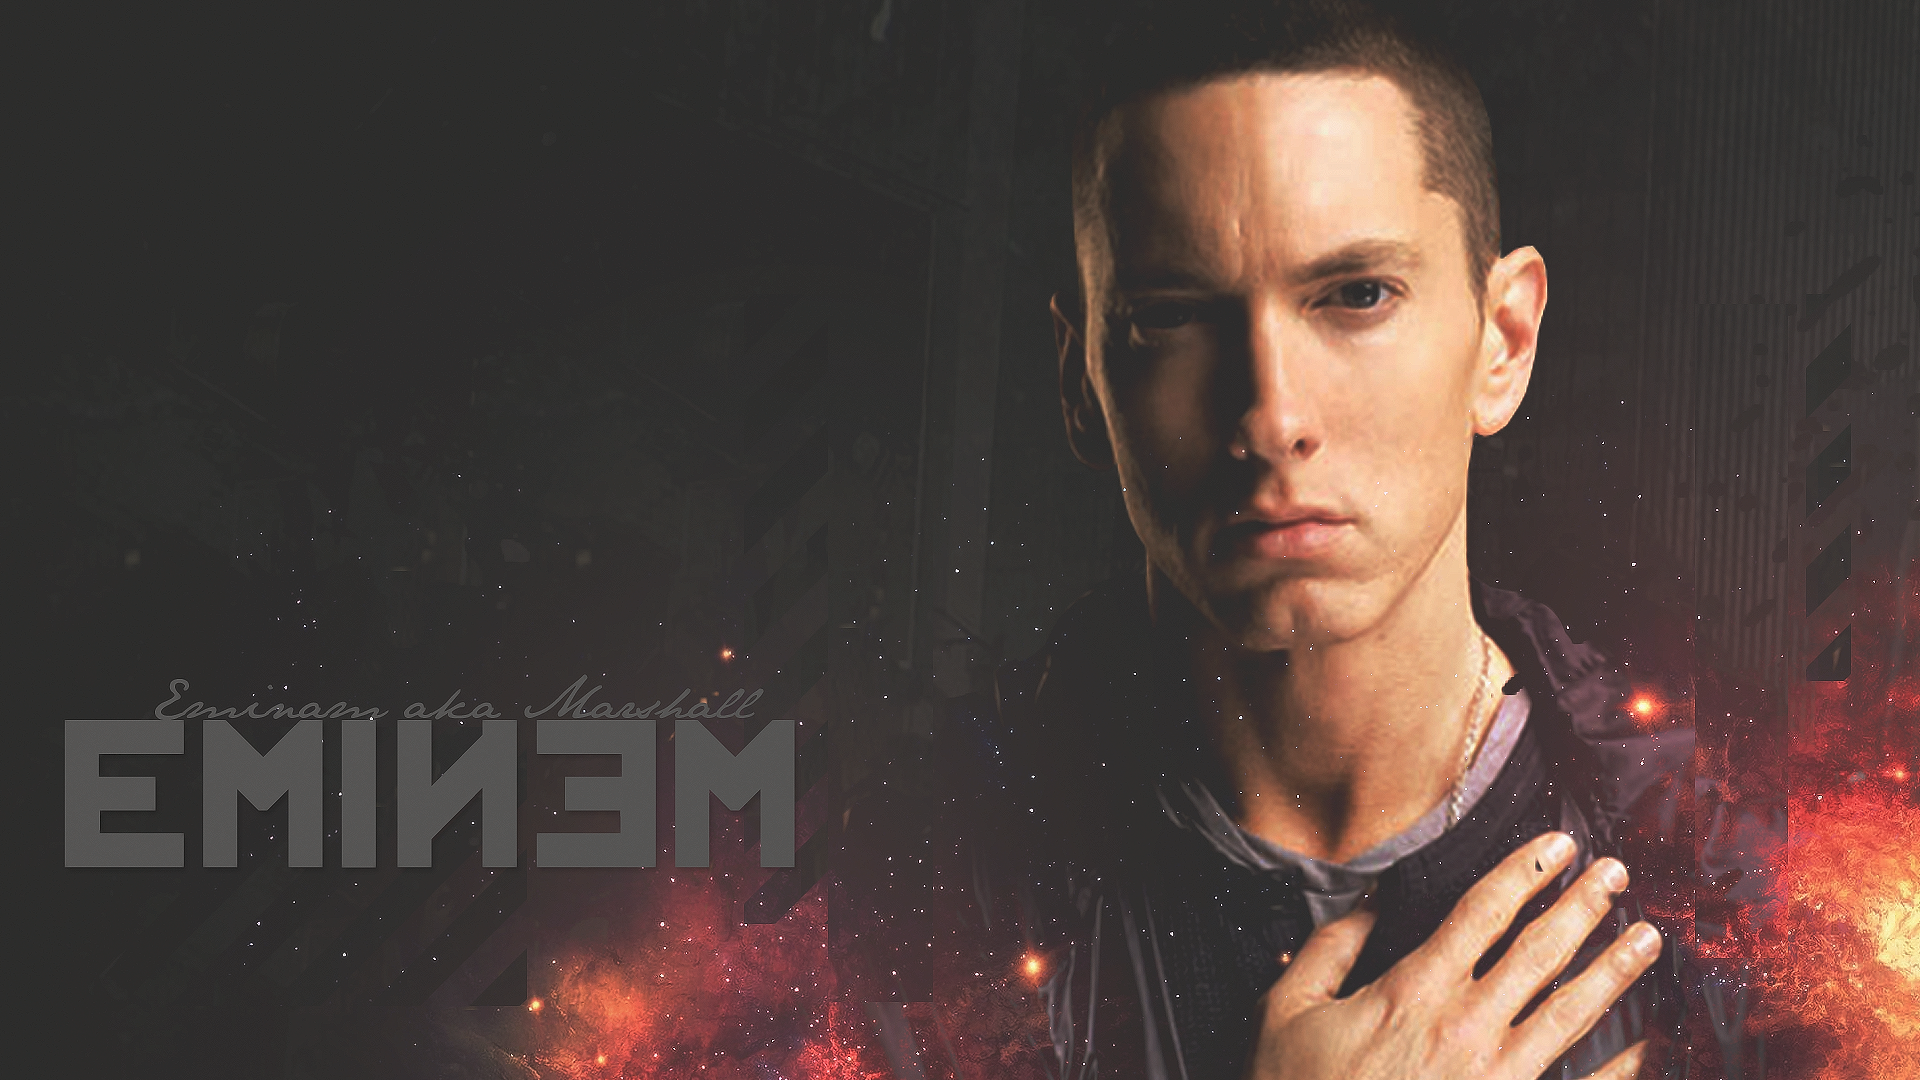 Eminem Images Eminem Hd Wallpaper And Background Photos - Eminem Wallpaper Hd , HD Wallpaper & Backgrounds